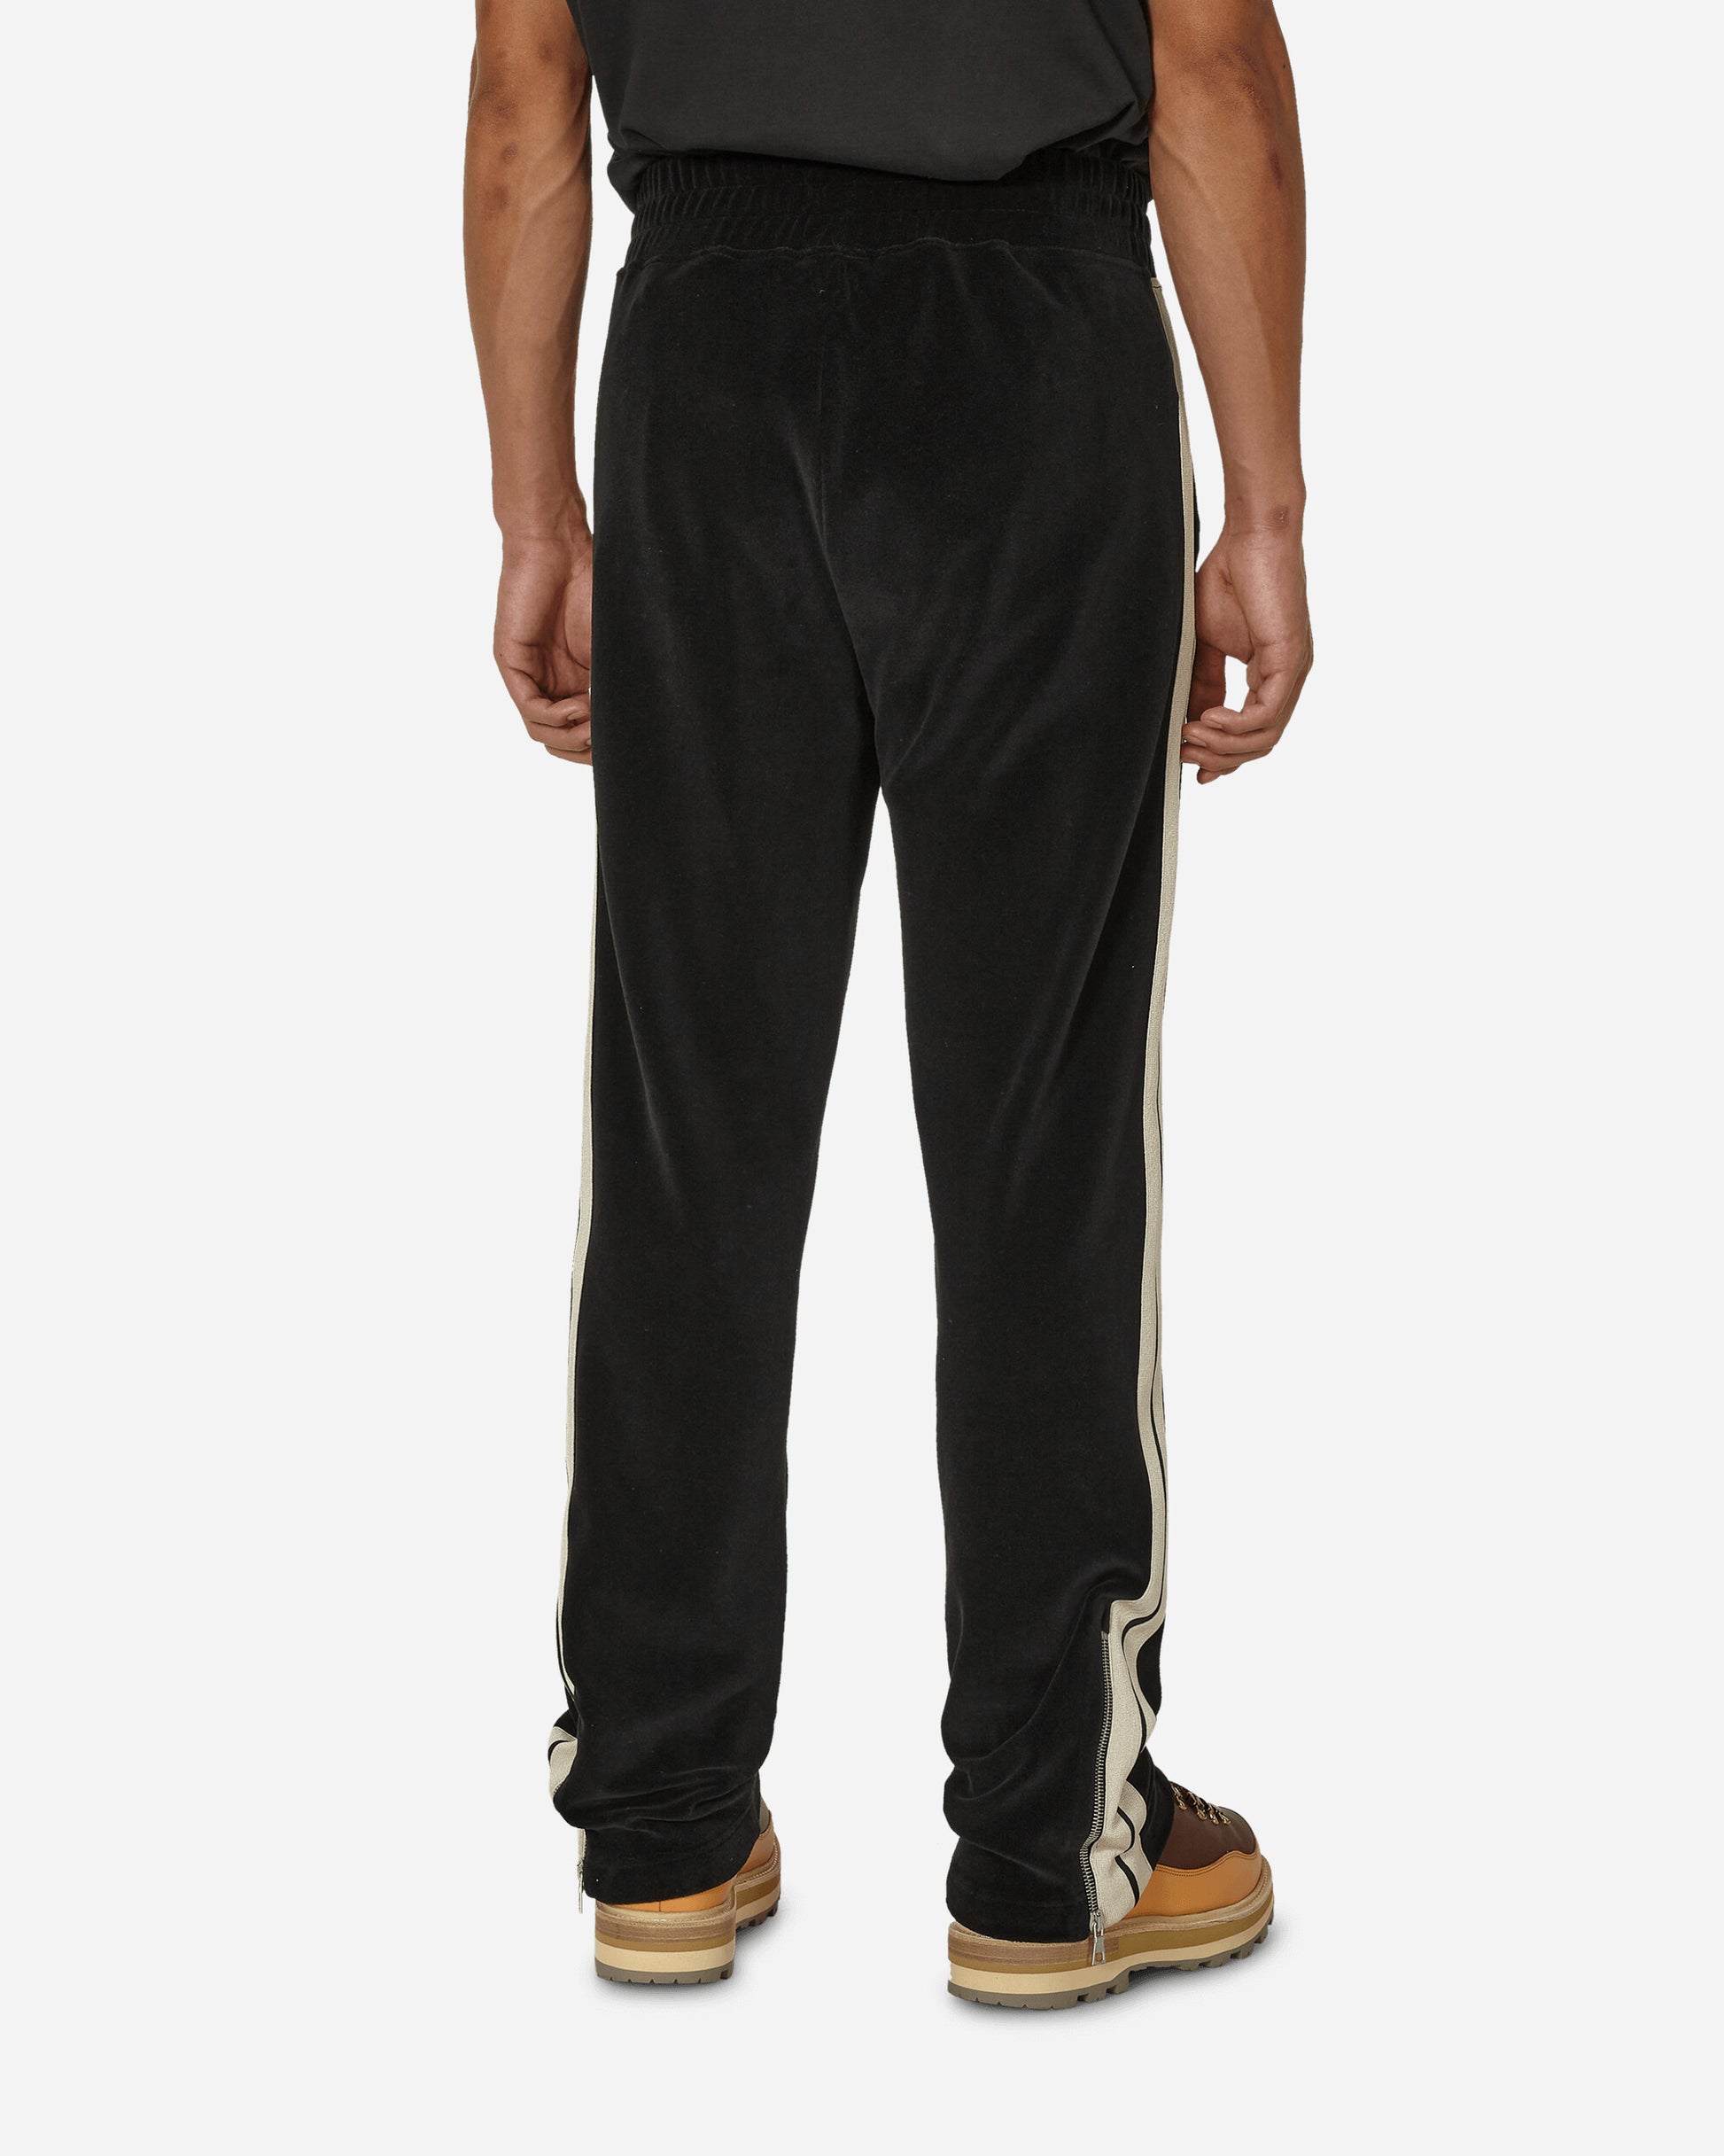 Moncler Genius Jersey Pant X Palm Angels Black Pants Sweatpants 8H0000189A6S 999